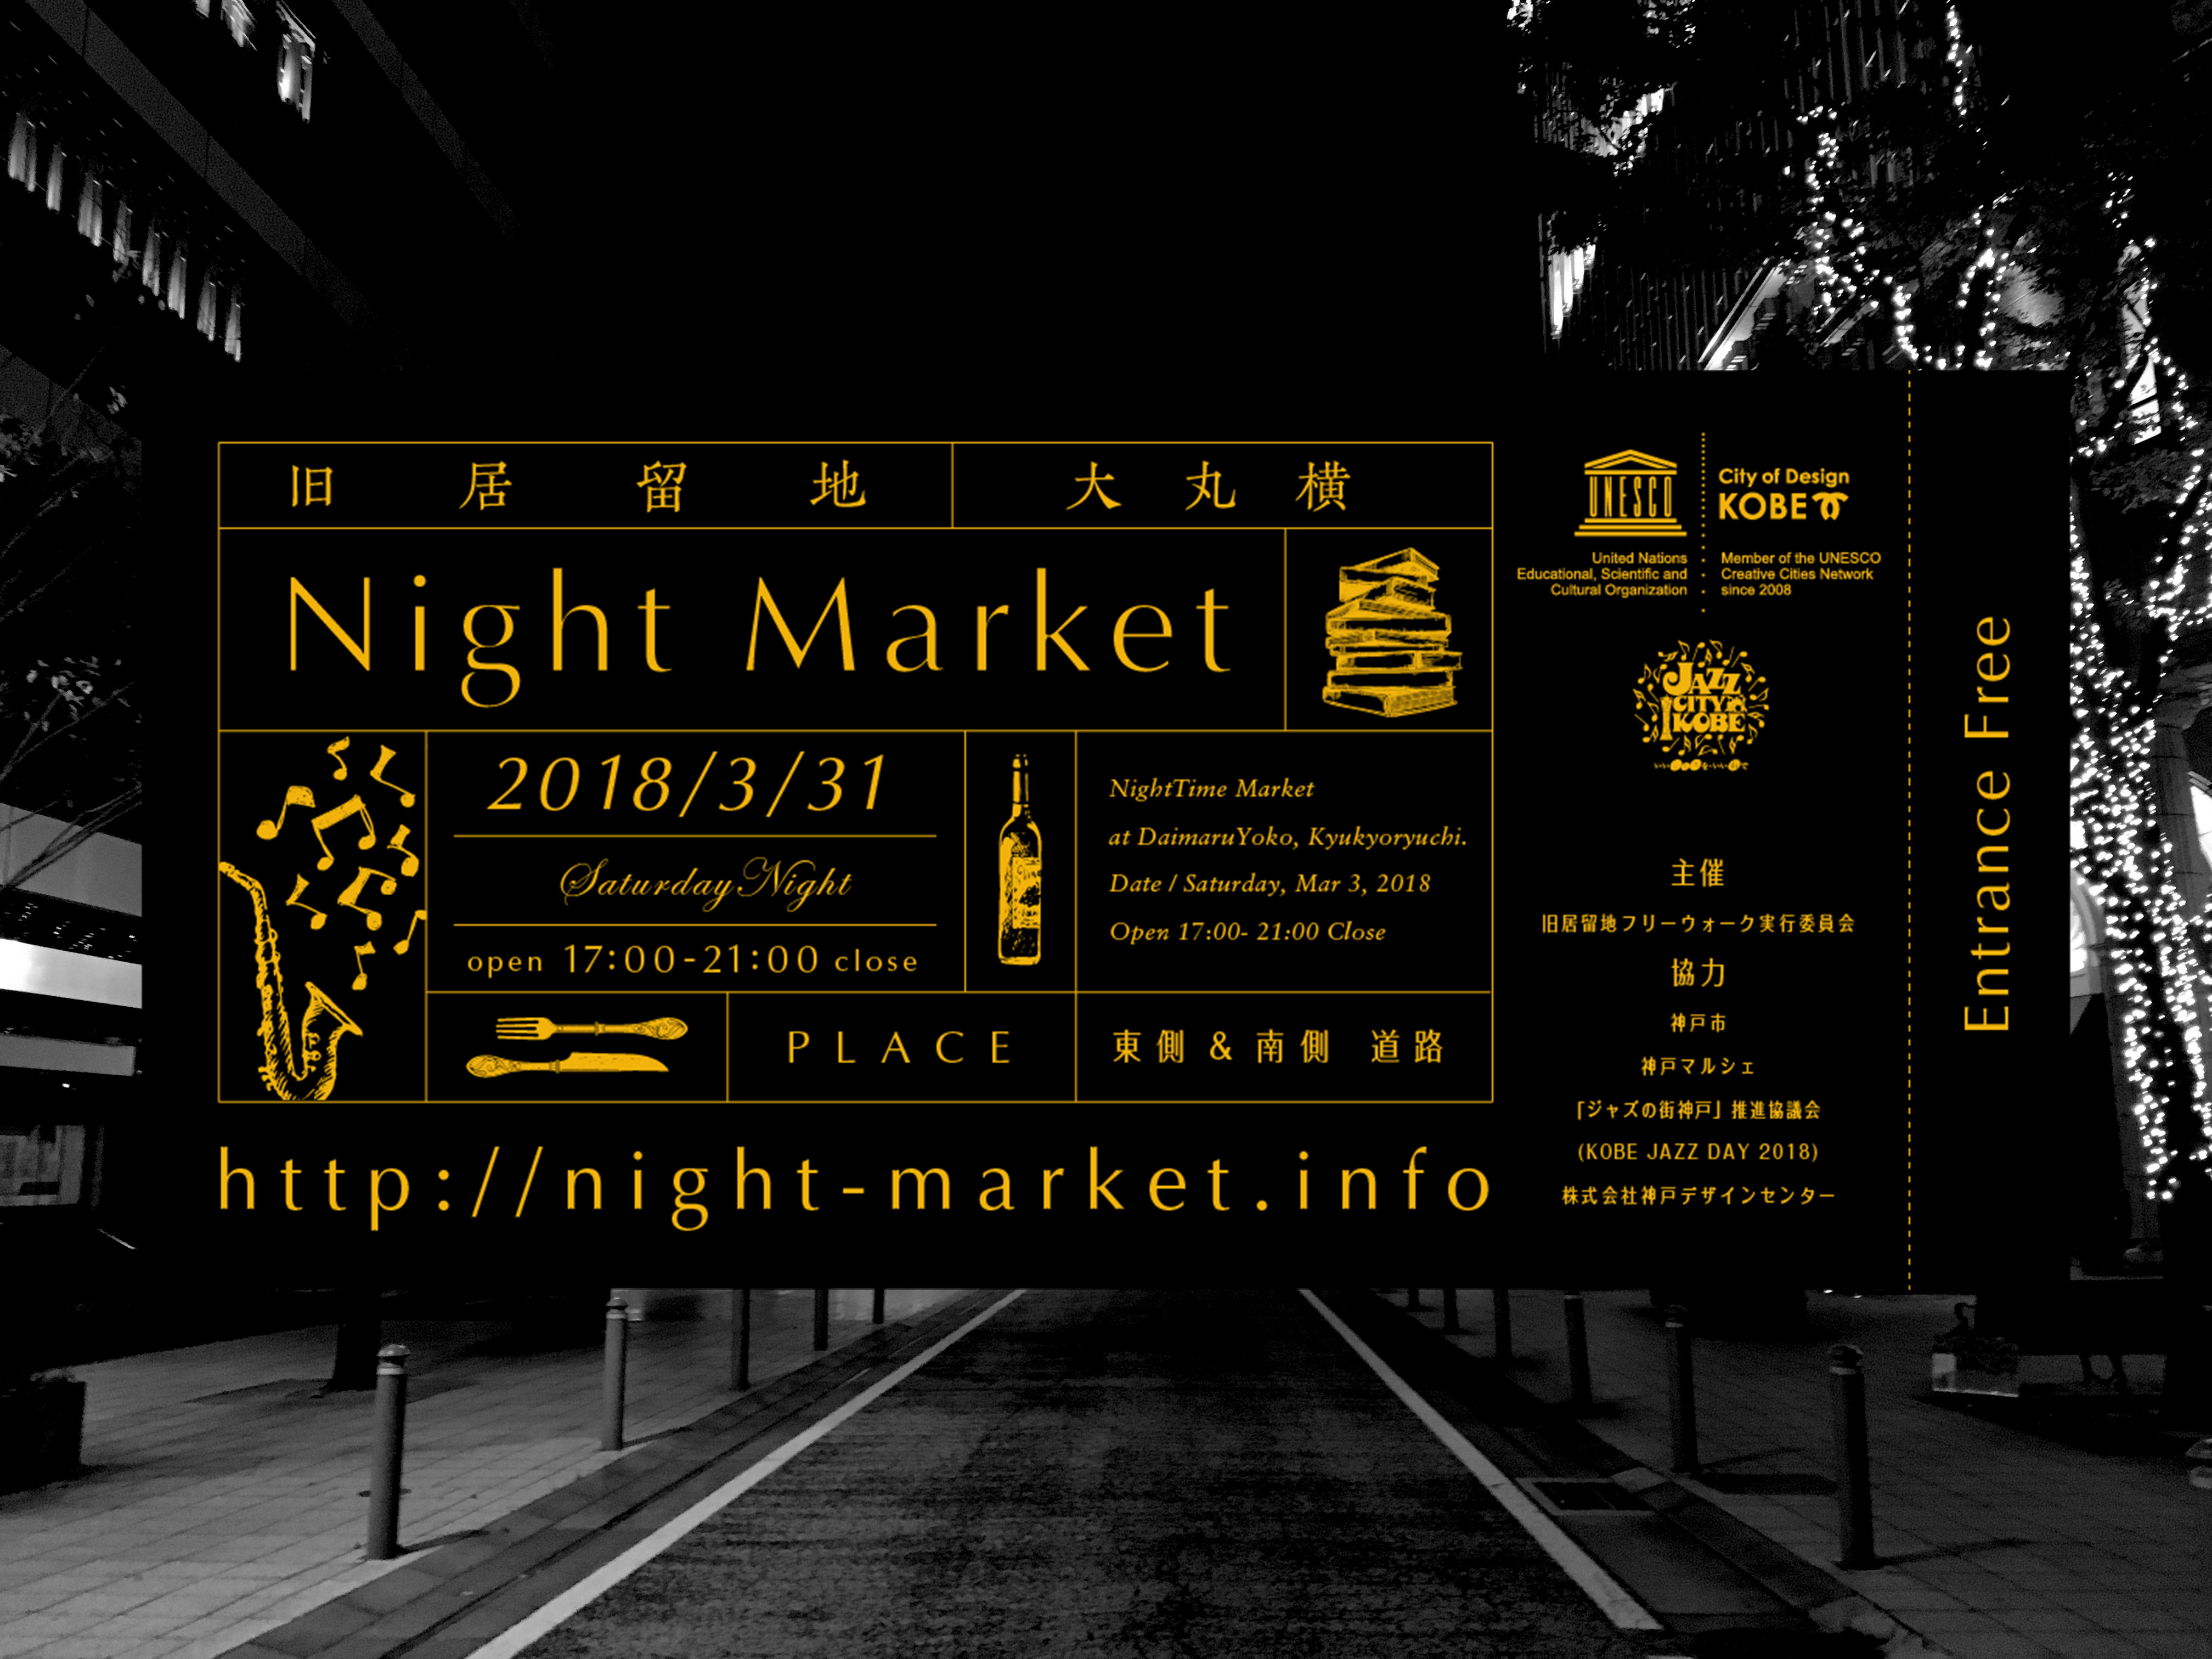 旧居留地NightMarketの会場企画と広報を担当しました